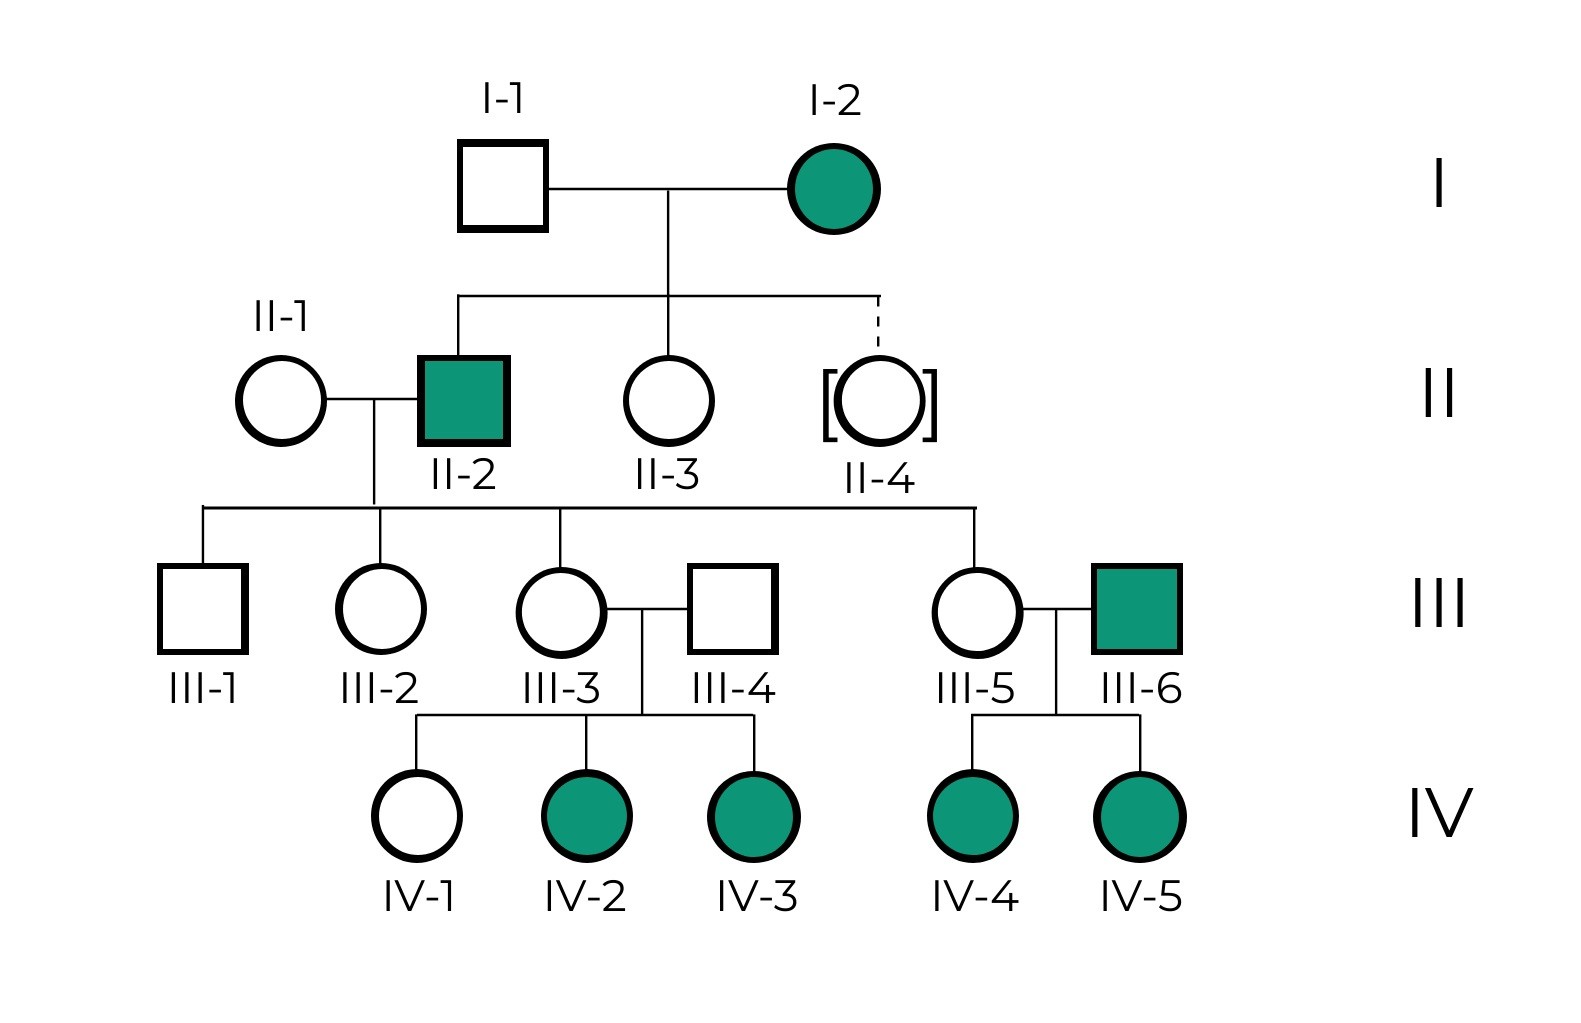 Cómo hacer un árbol genealógico? - Blog de